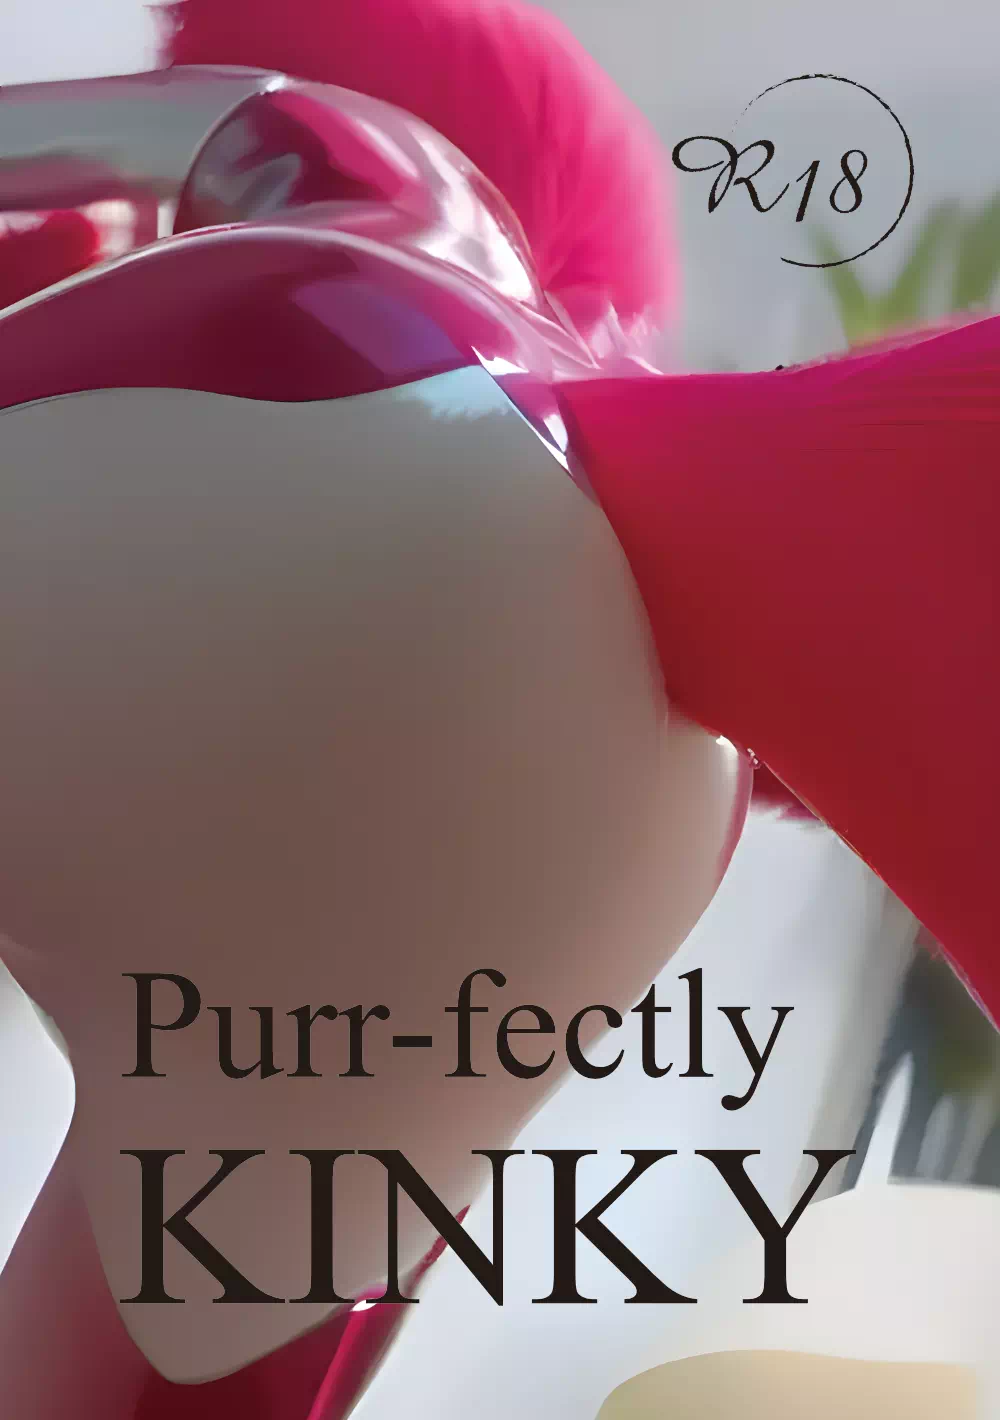 Purr-fectly KINKY【新春けもケット9新刊】